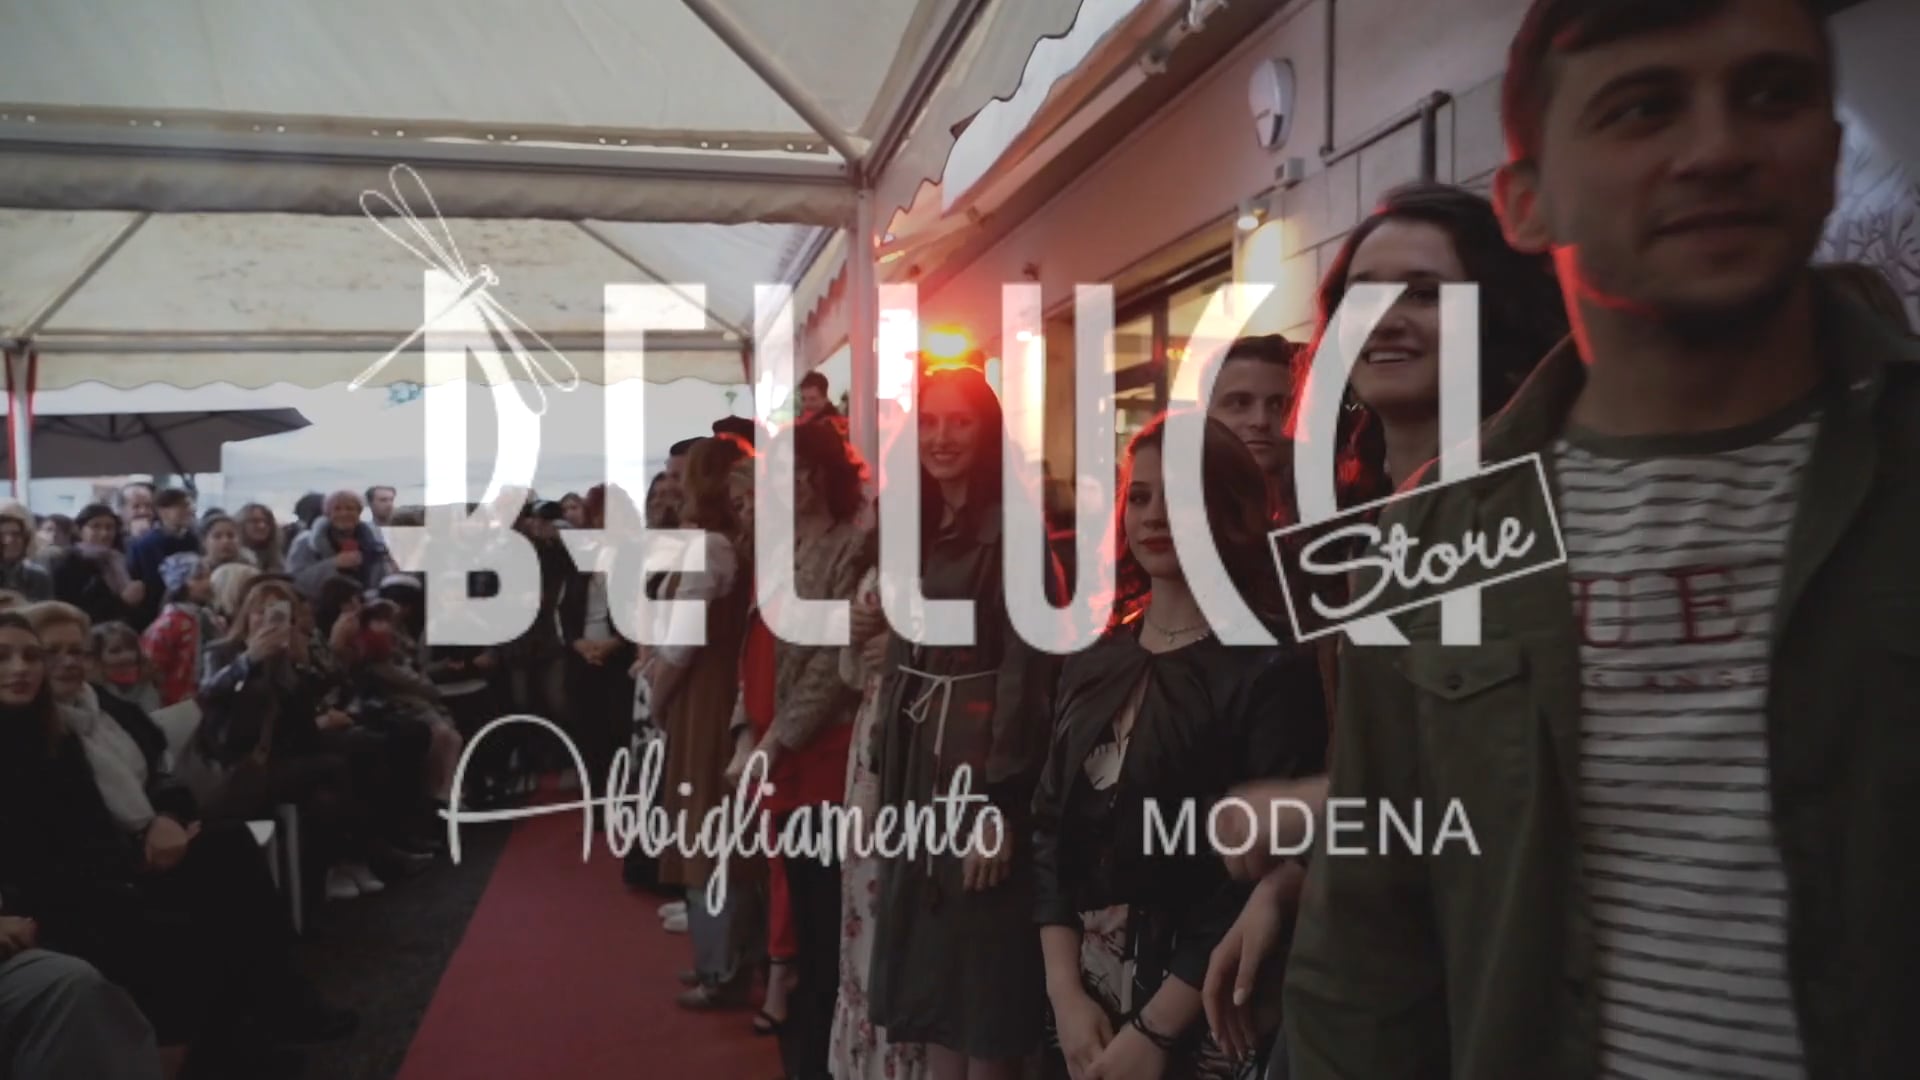 Bellucci store - Red Carpet 1